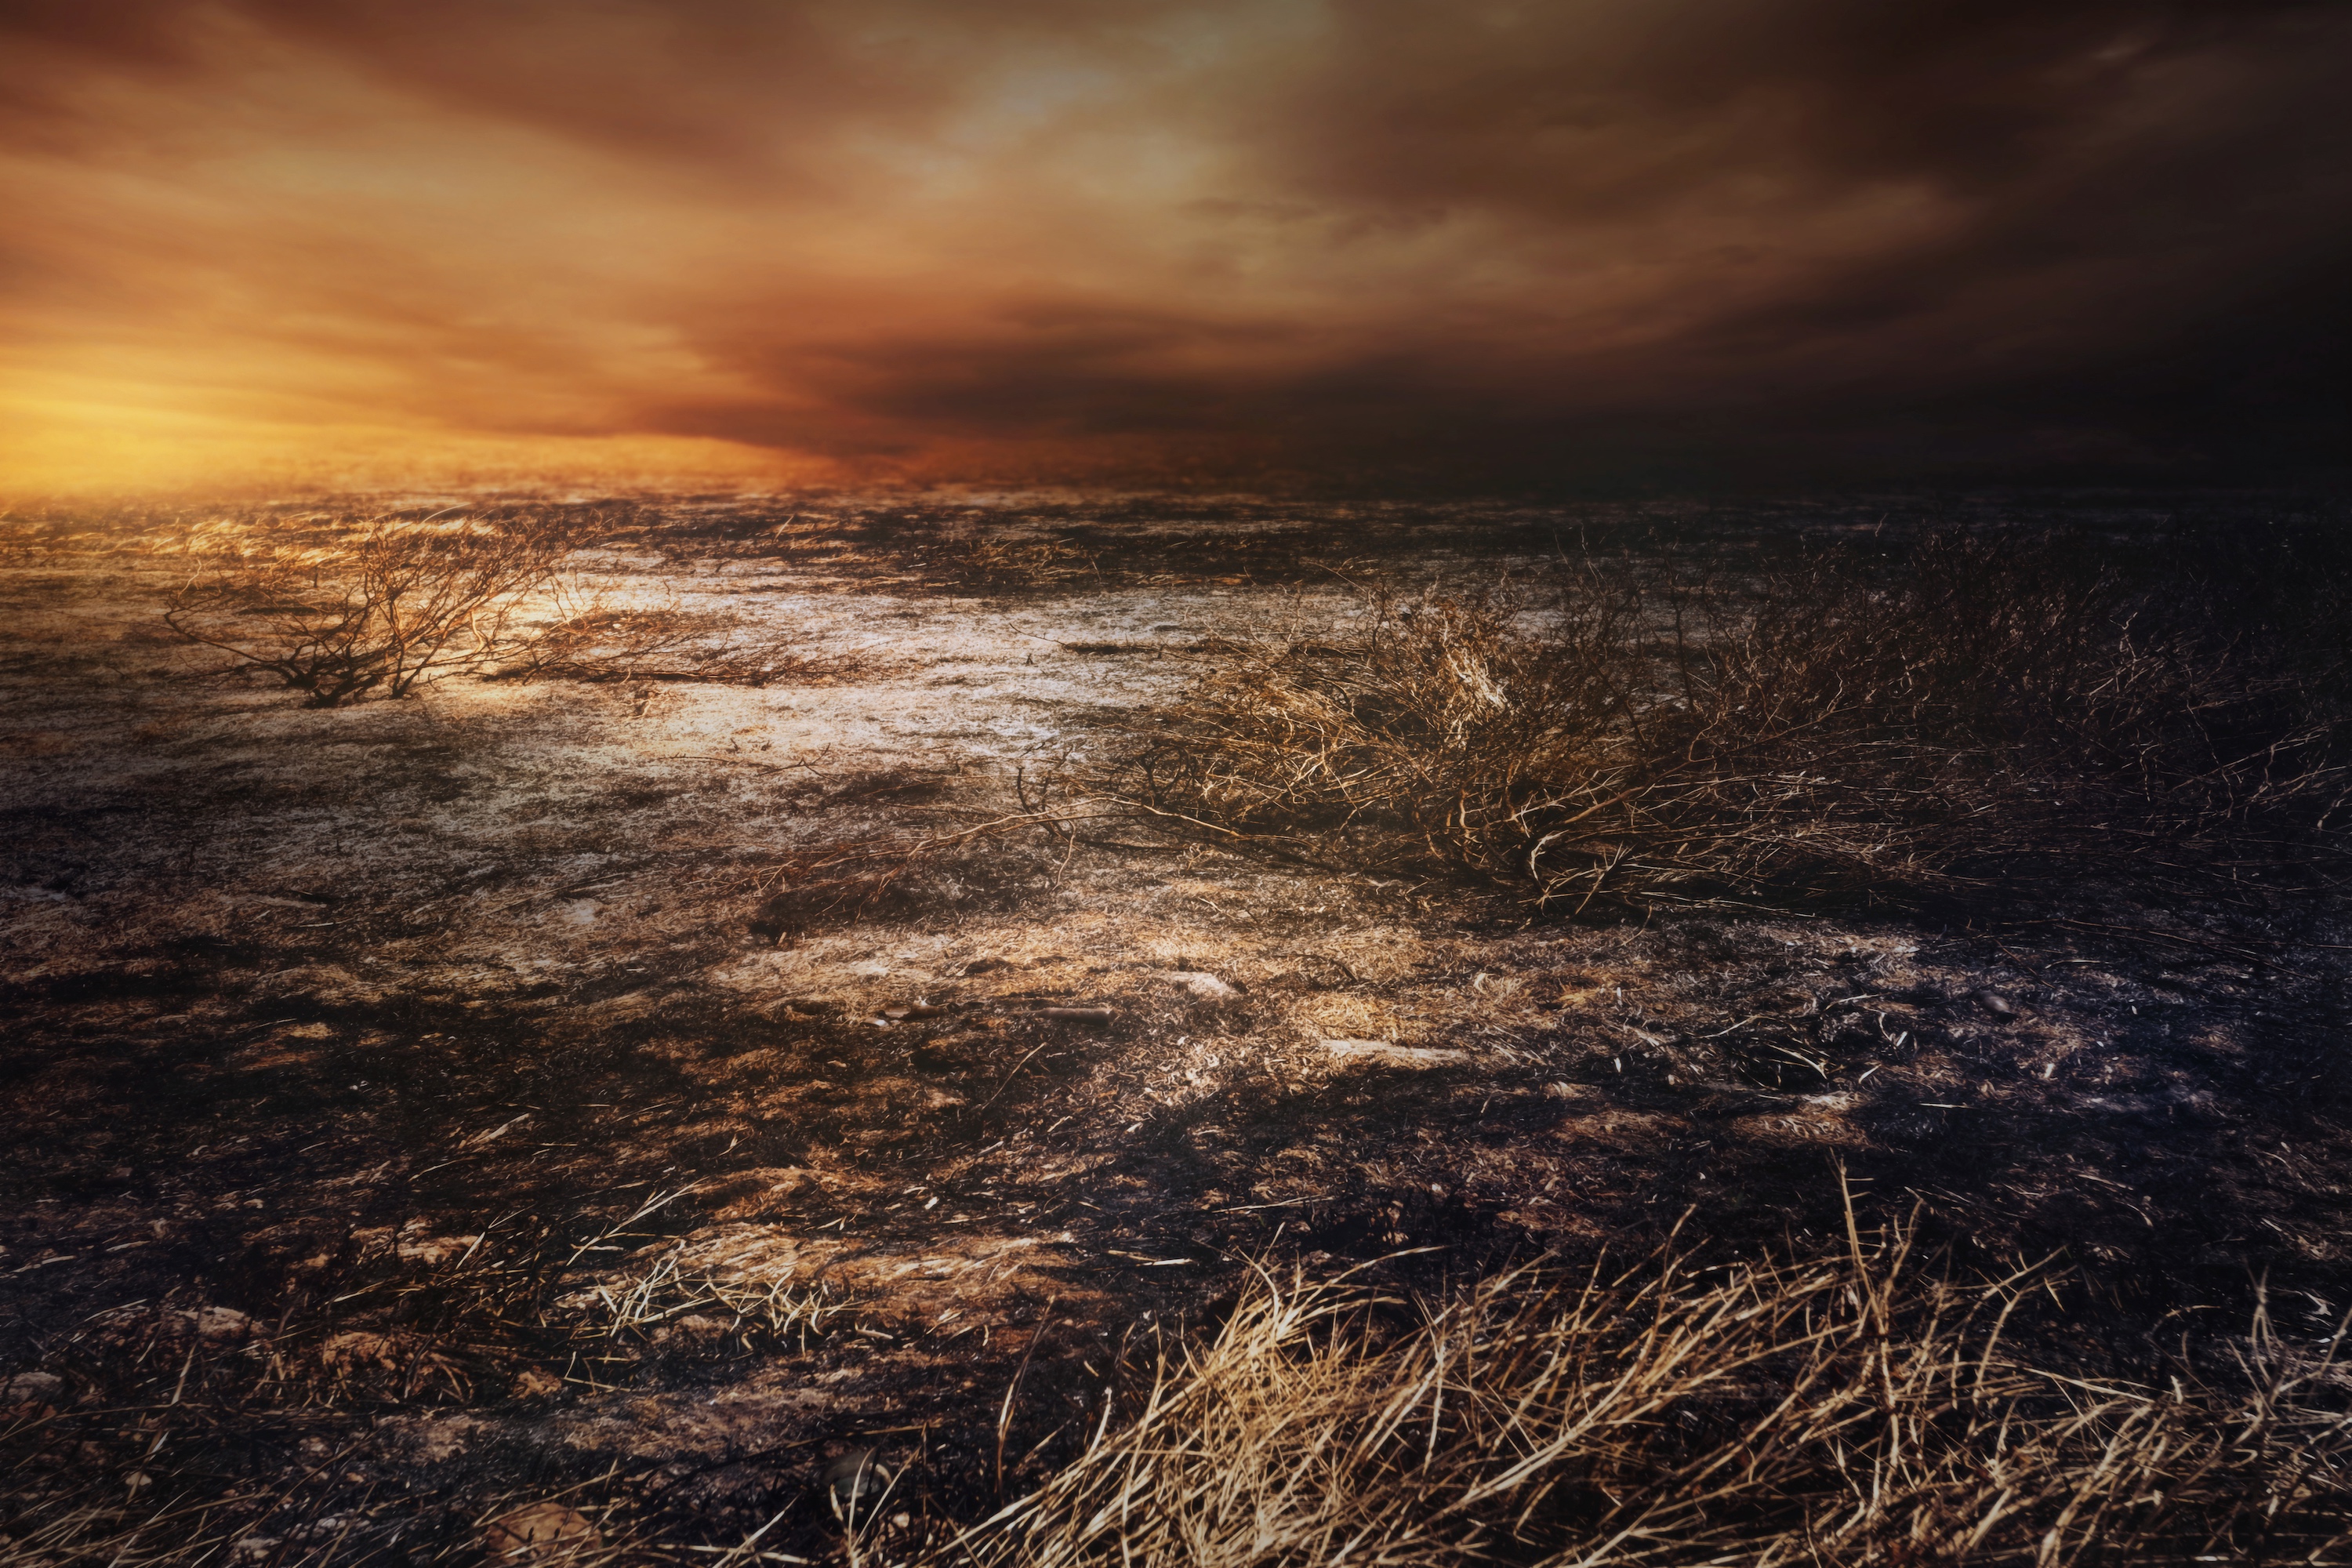 La multiplication des feux de forêt met la planète — et surtout, ceux qui y vivent — en danger. Tout comme la pollution sonore et les perturbations dans les cycles de vie provoquées par le réchauffement climatique. © chokchaipoo, Adobe Stock